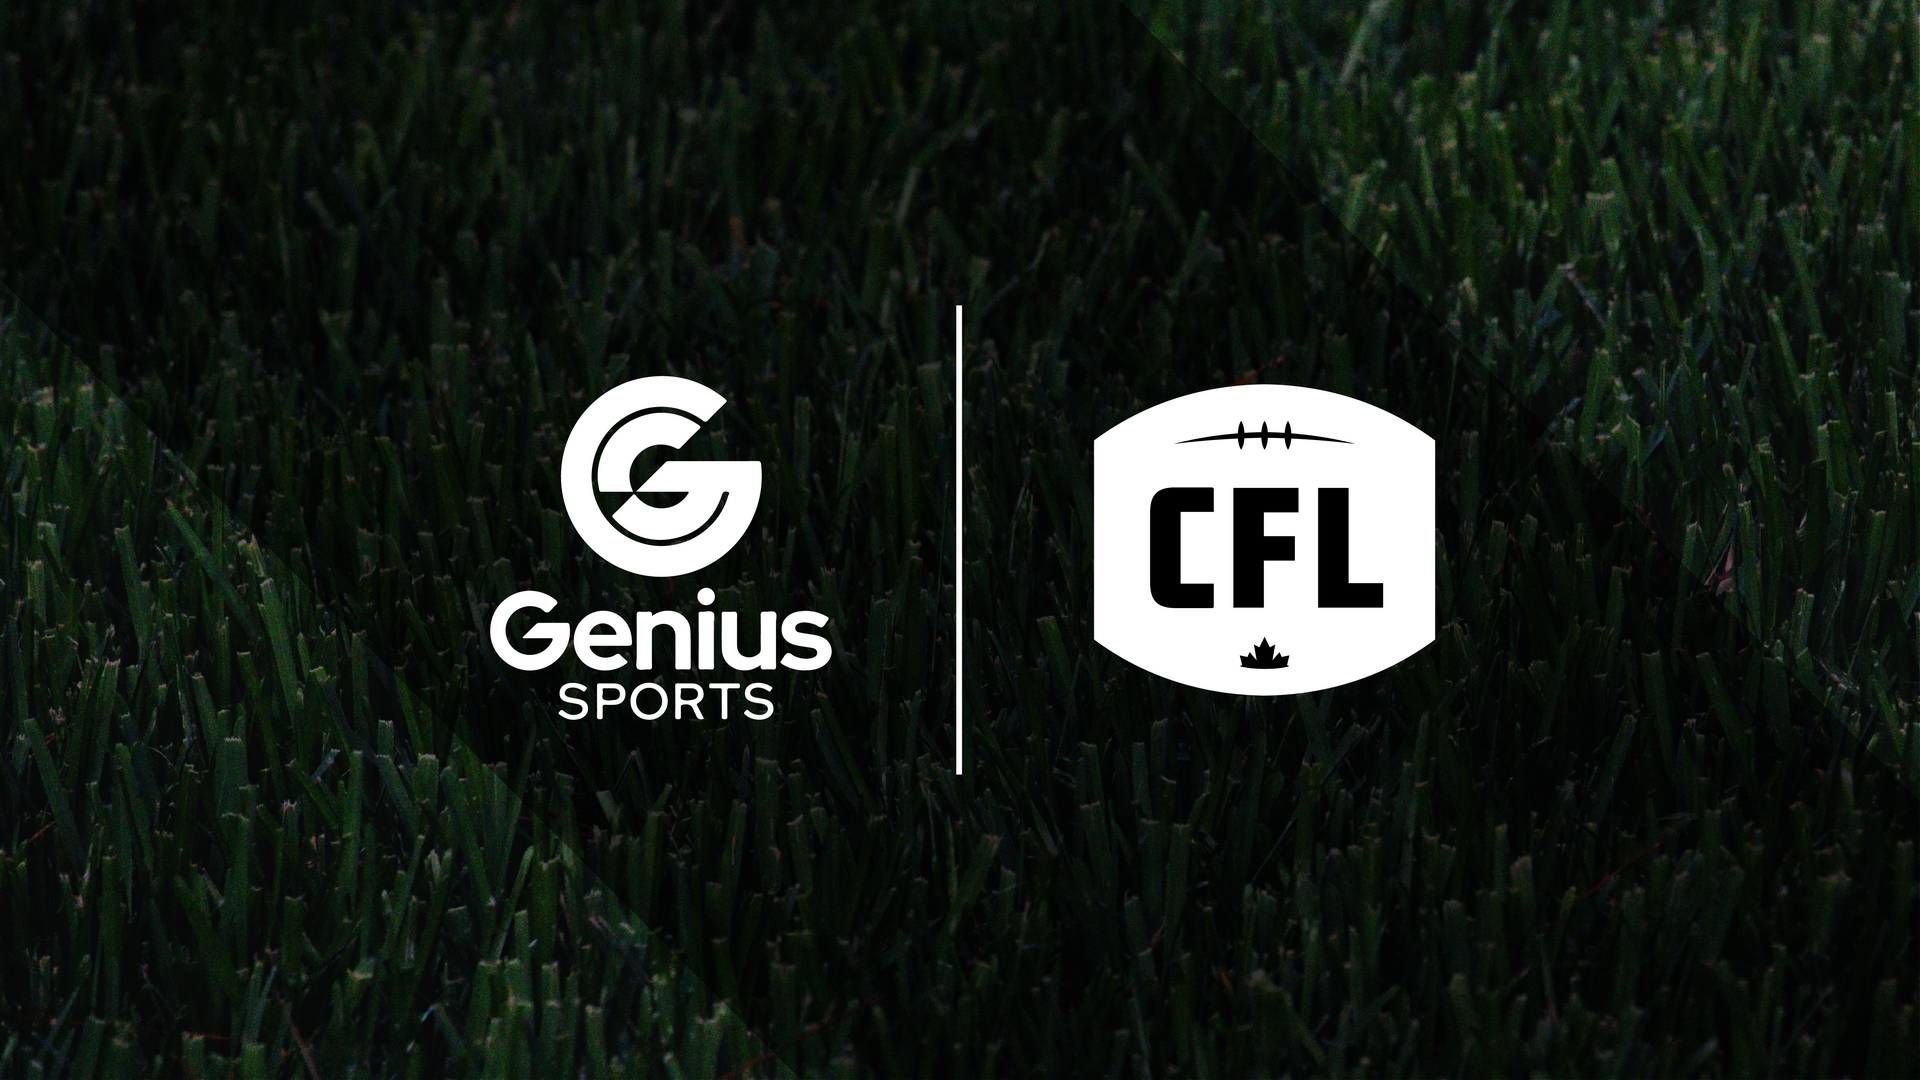 Genius sports CFL